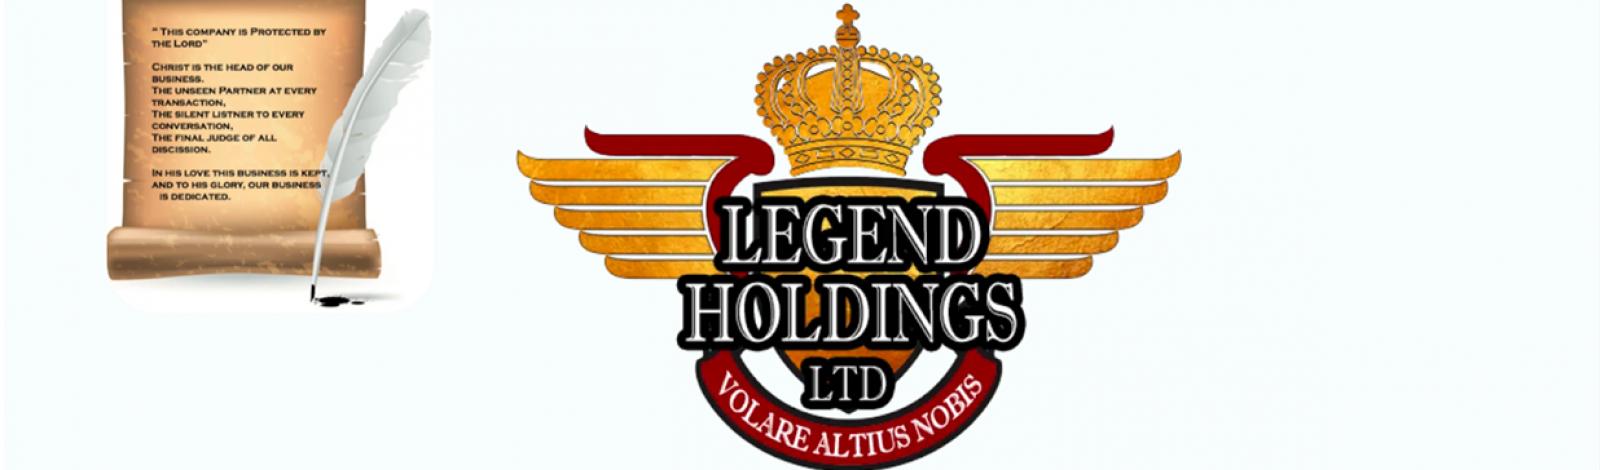 Legend Holdings Ltd banner